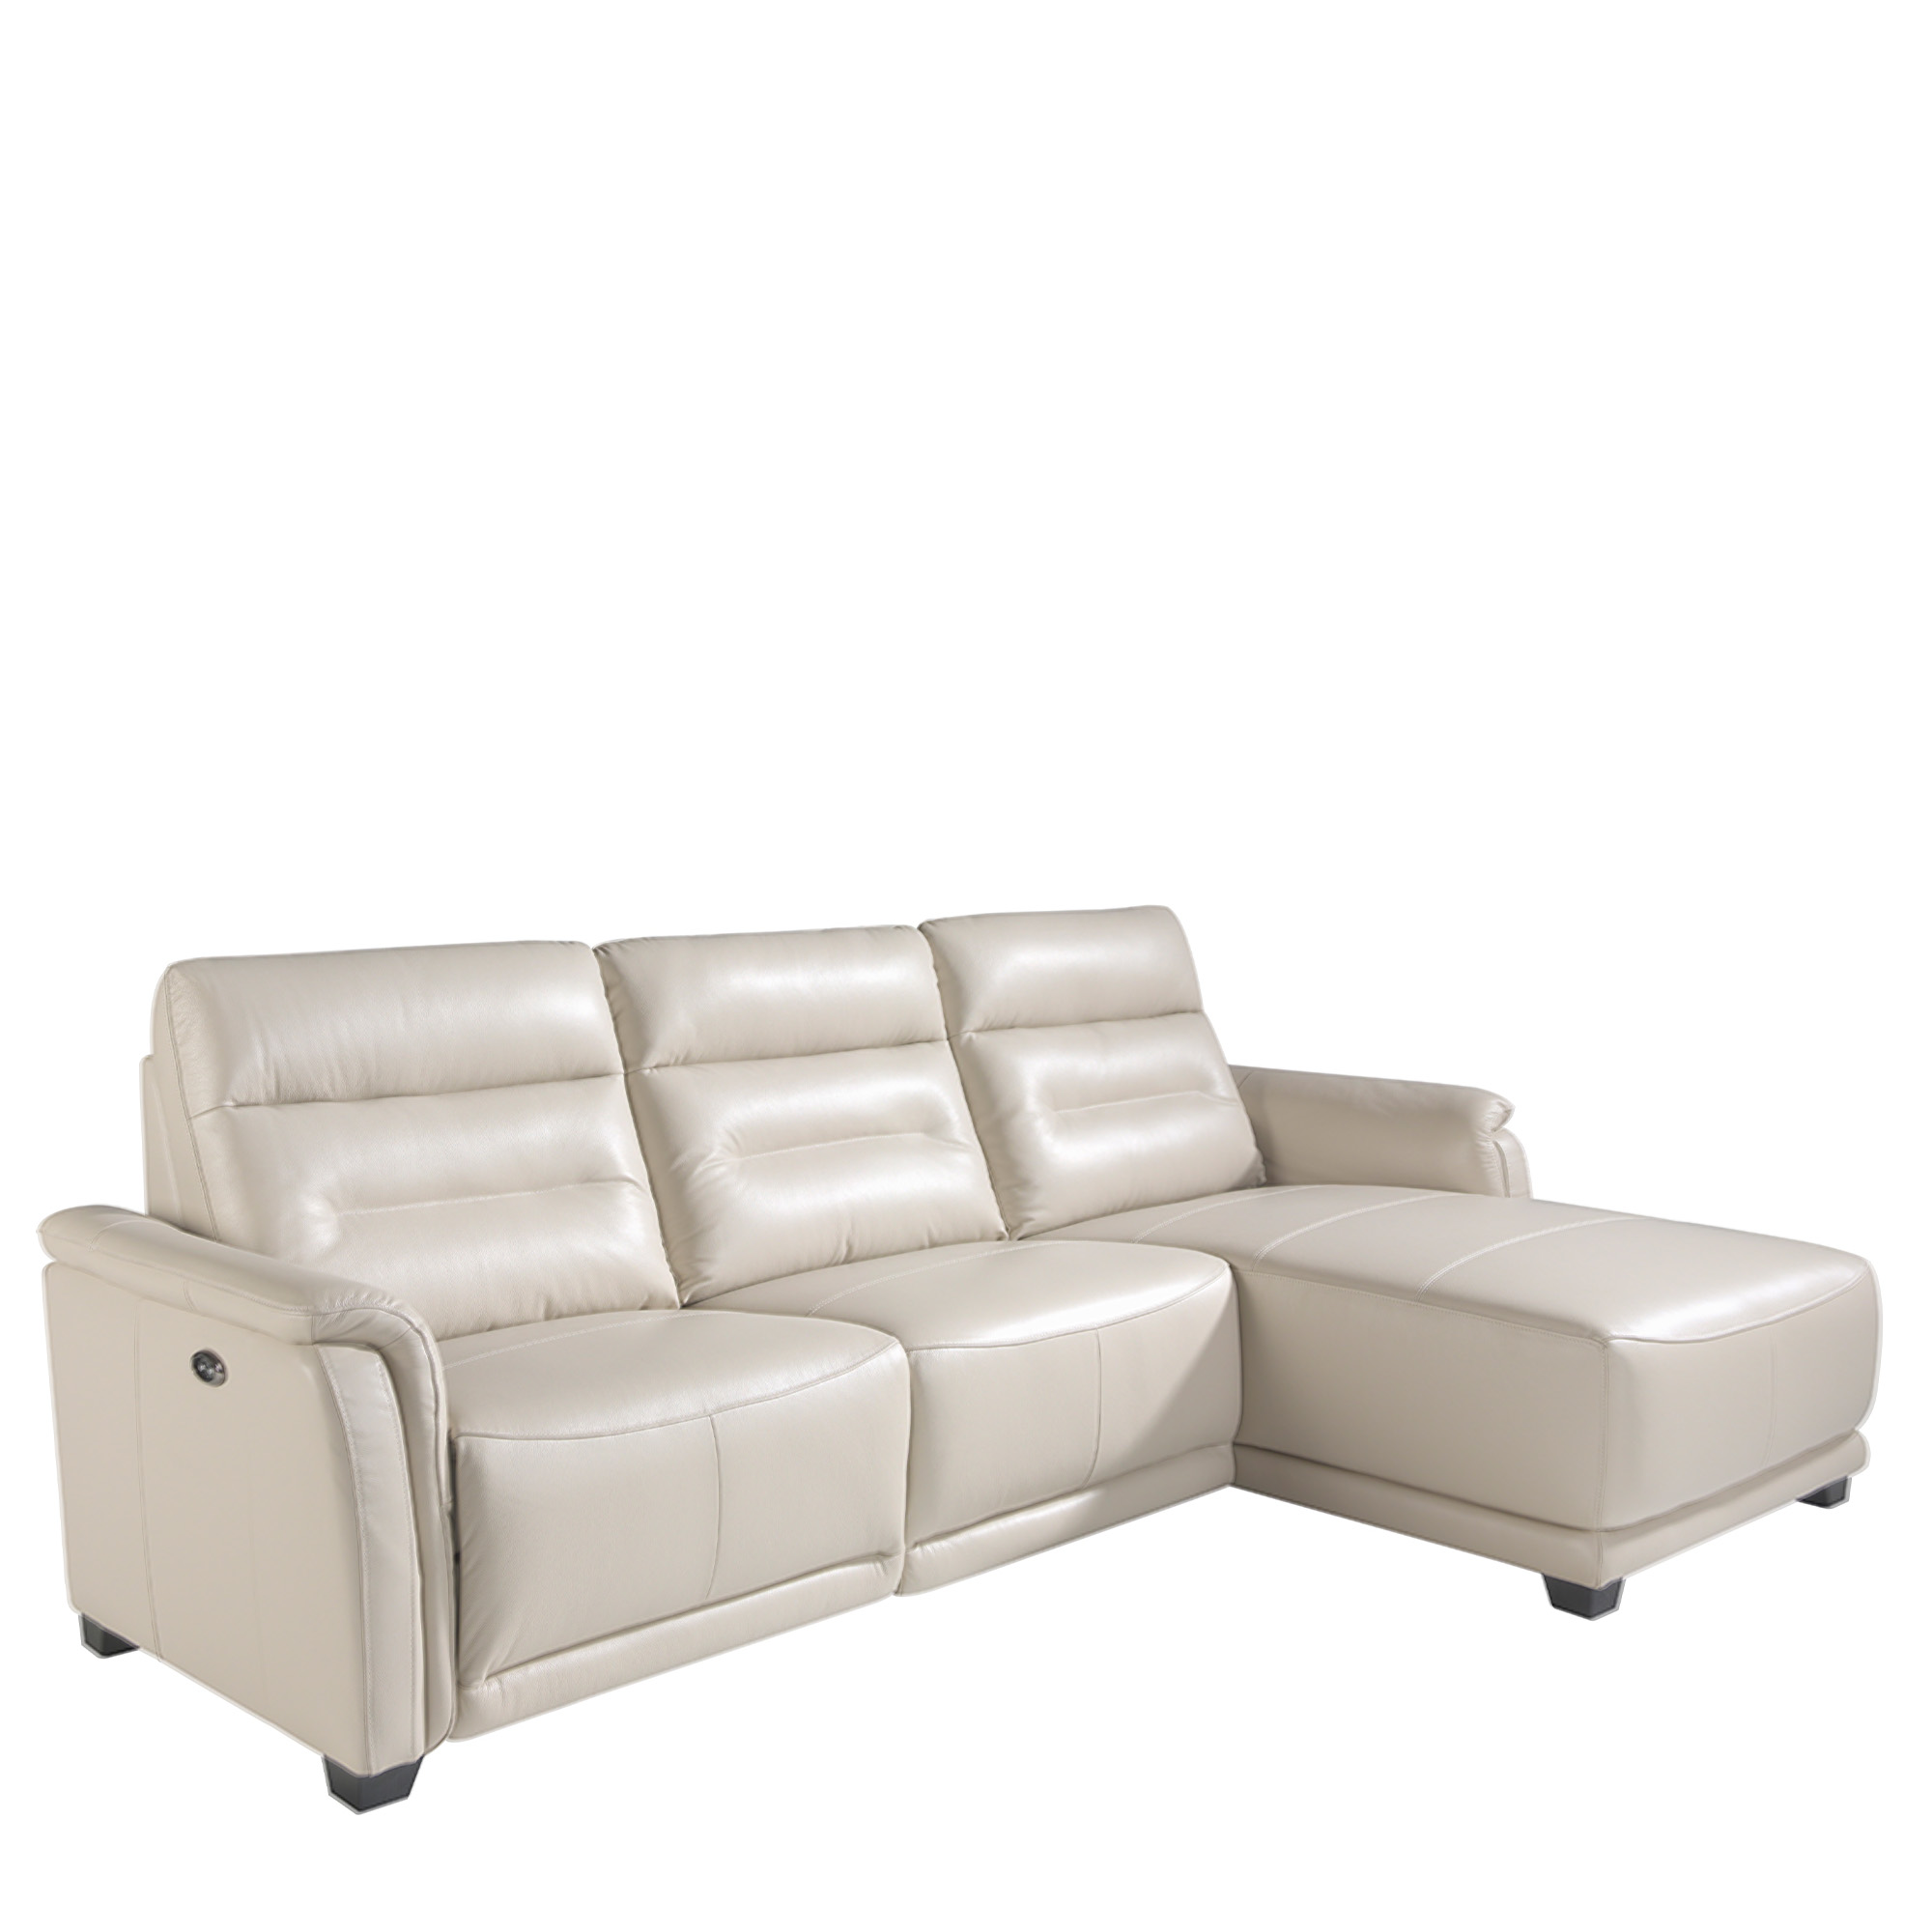 Sofa chaise longue tapizado en piel y mecanismo relax